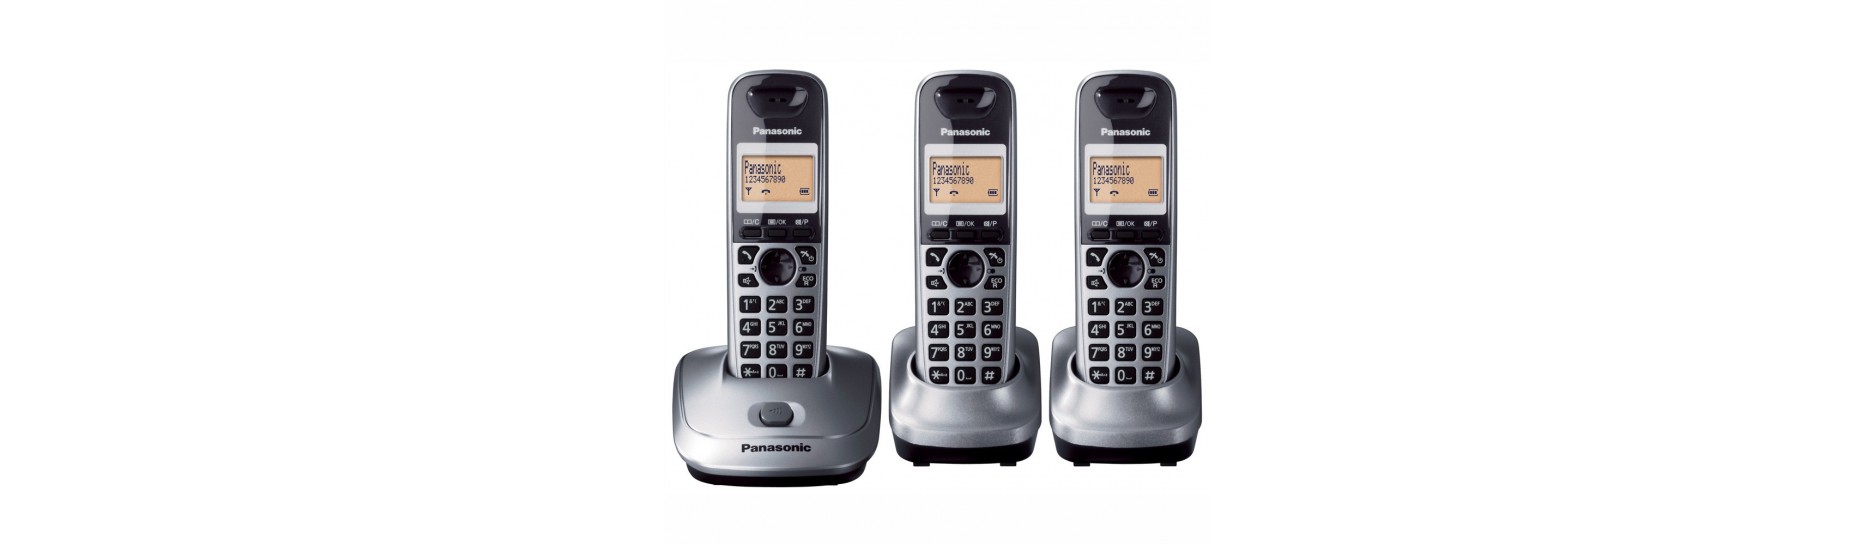 Telefonía y accesorios | Comprar Telefonia Domestica y Oficina